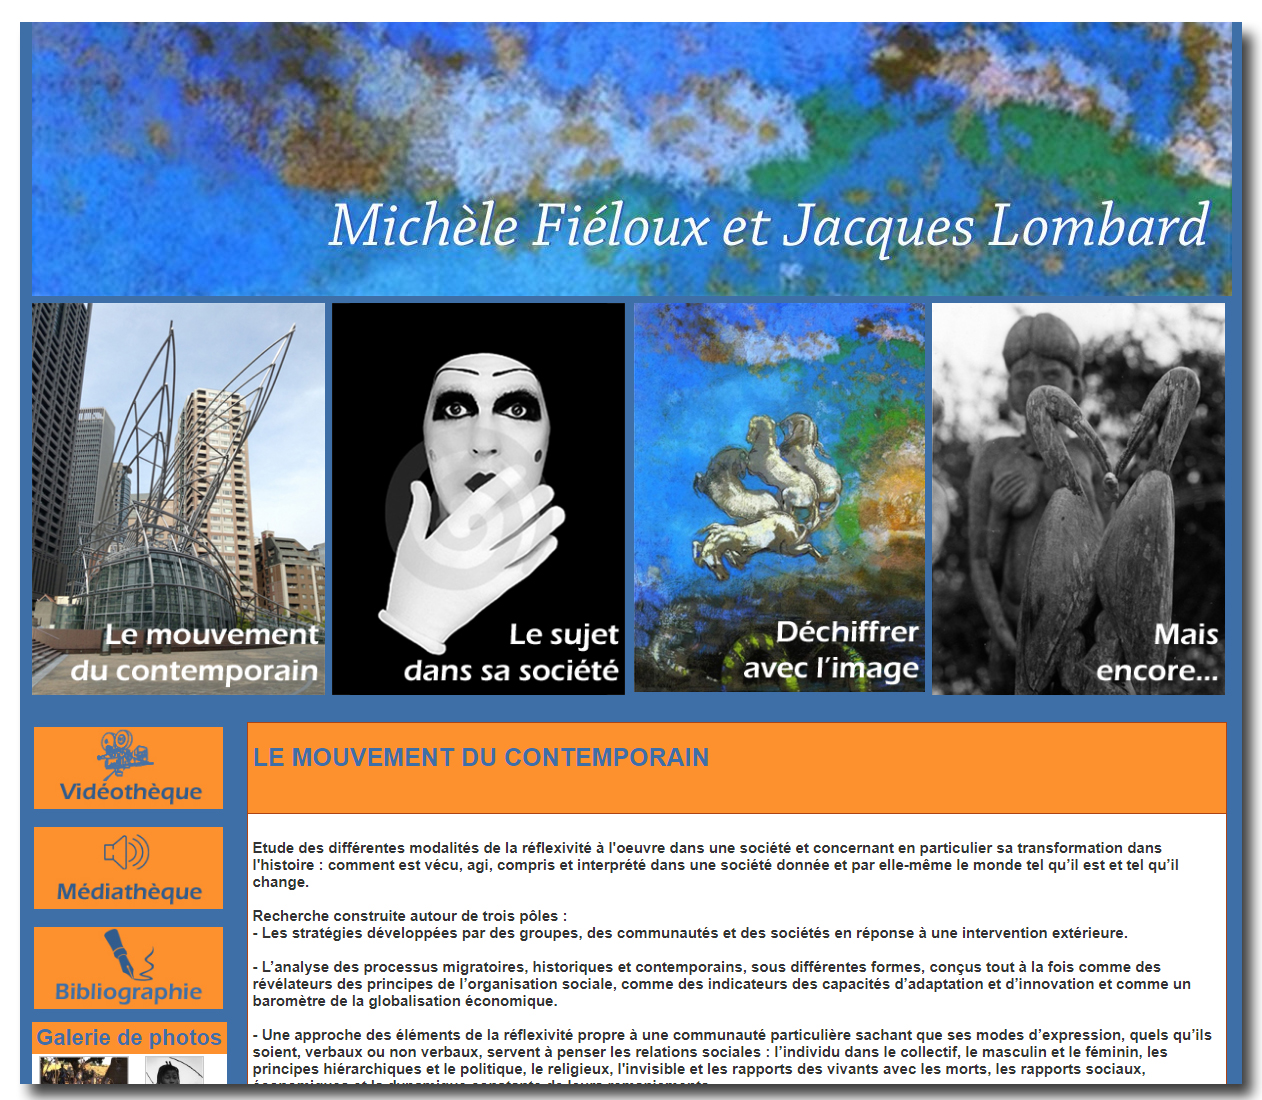 Nouveau Blog sur Anthropoweb : Michèle Fiéloux & Jacques Lombard